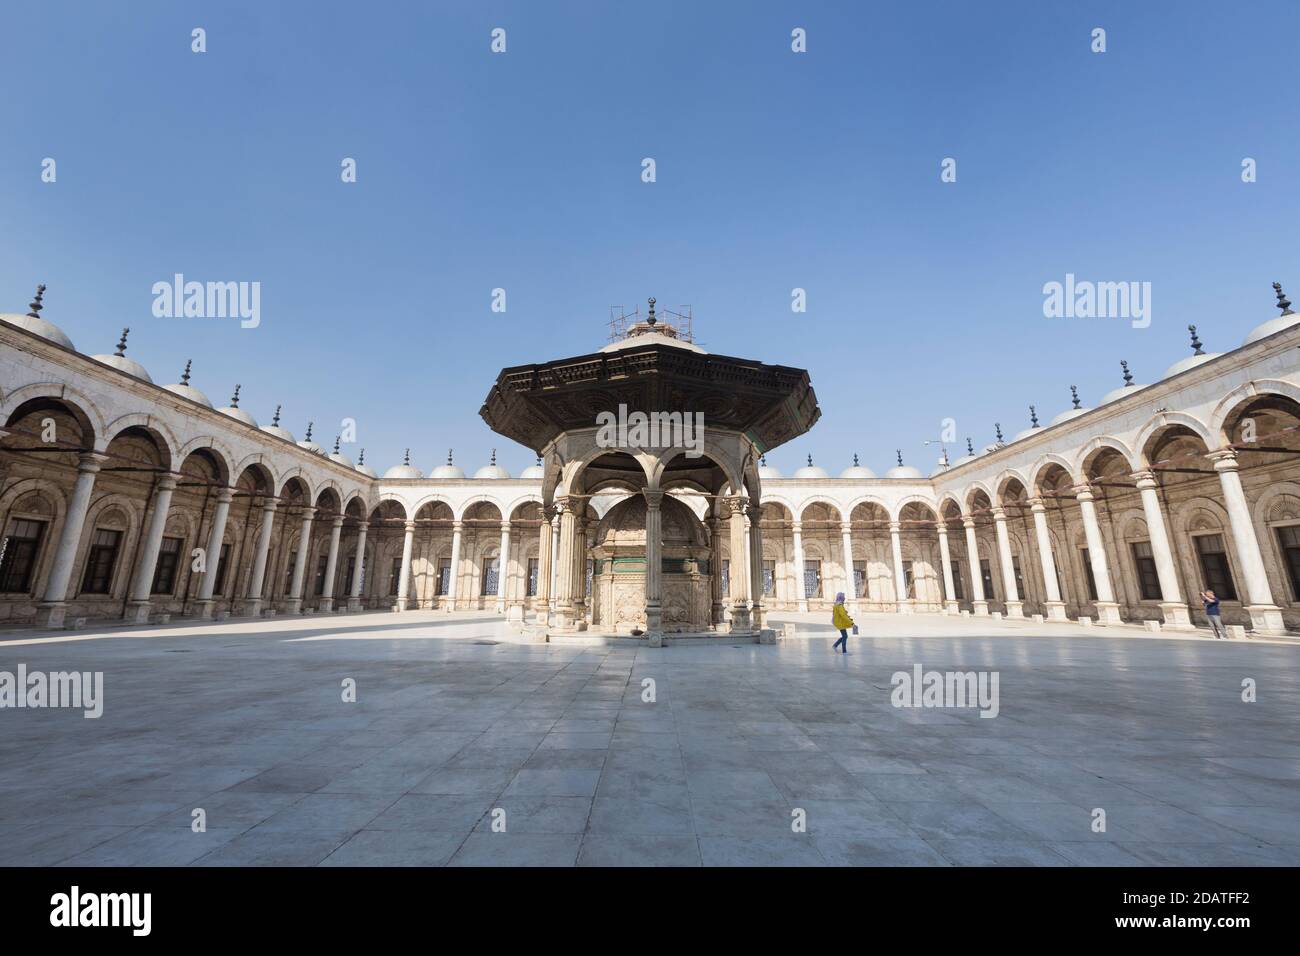 La fontana di marmo abluzione nel cortile della grande moschea di Muhammad Ali, il Cairo, Egitto Foto Stock